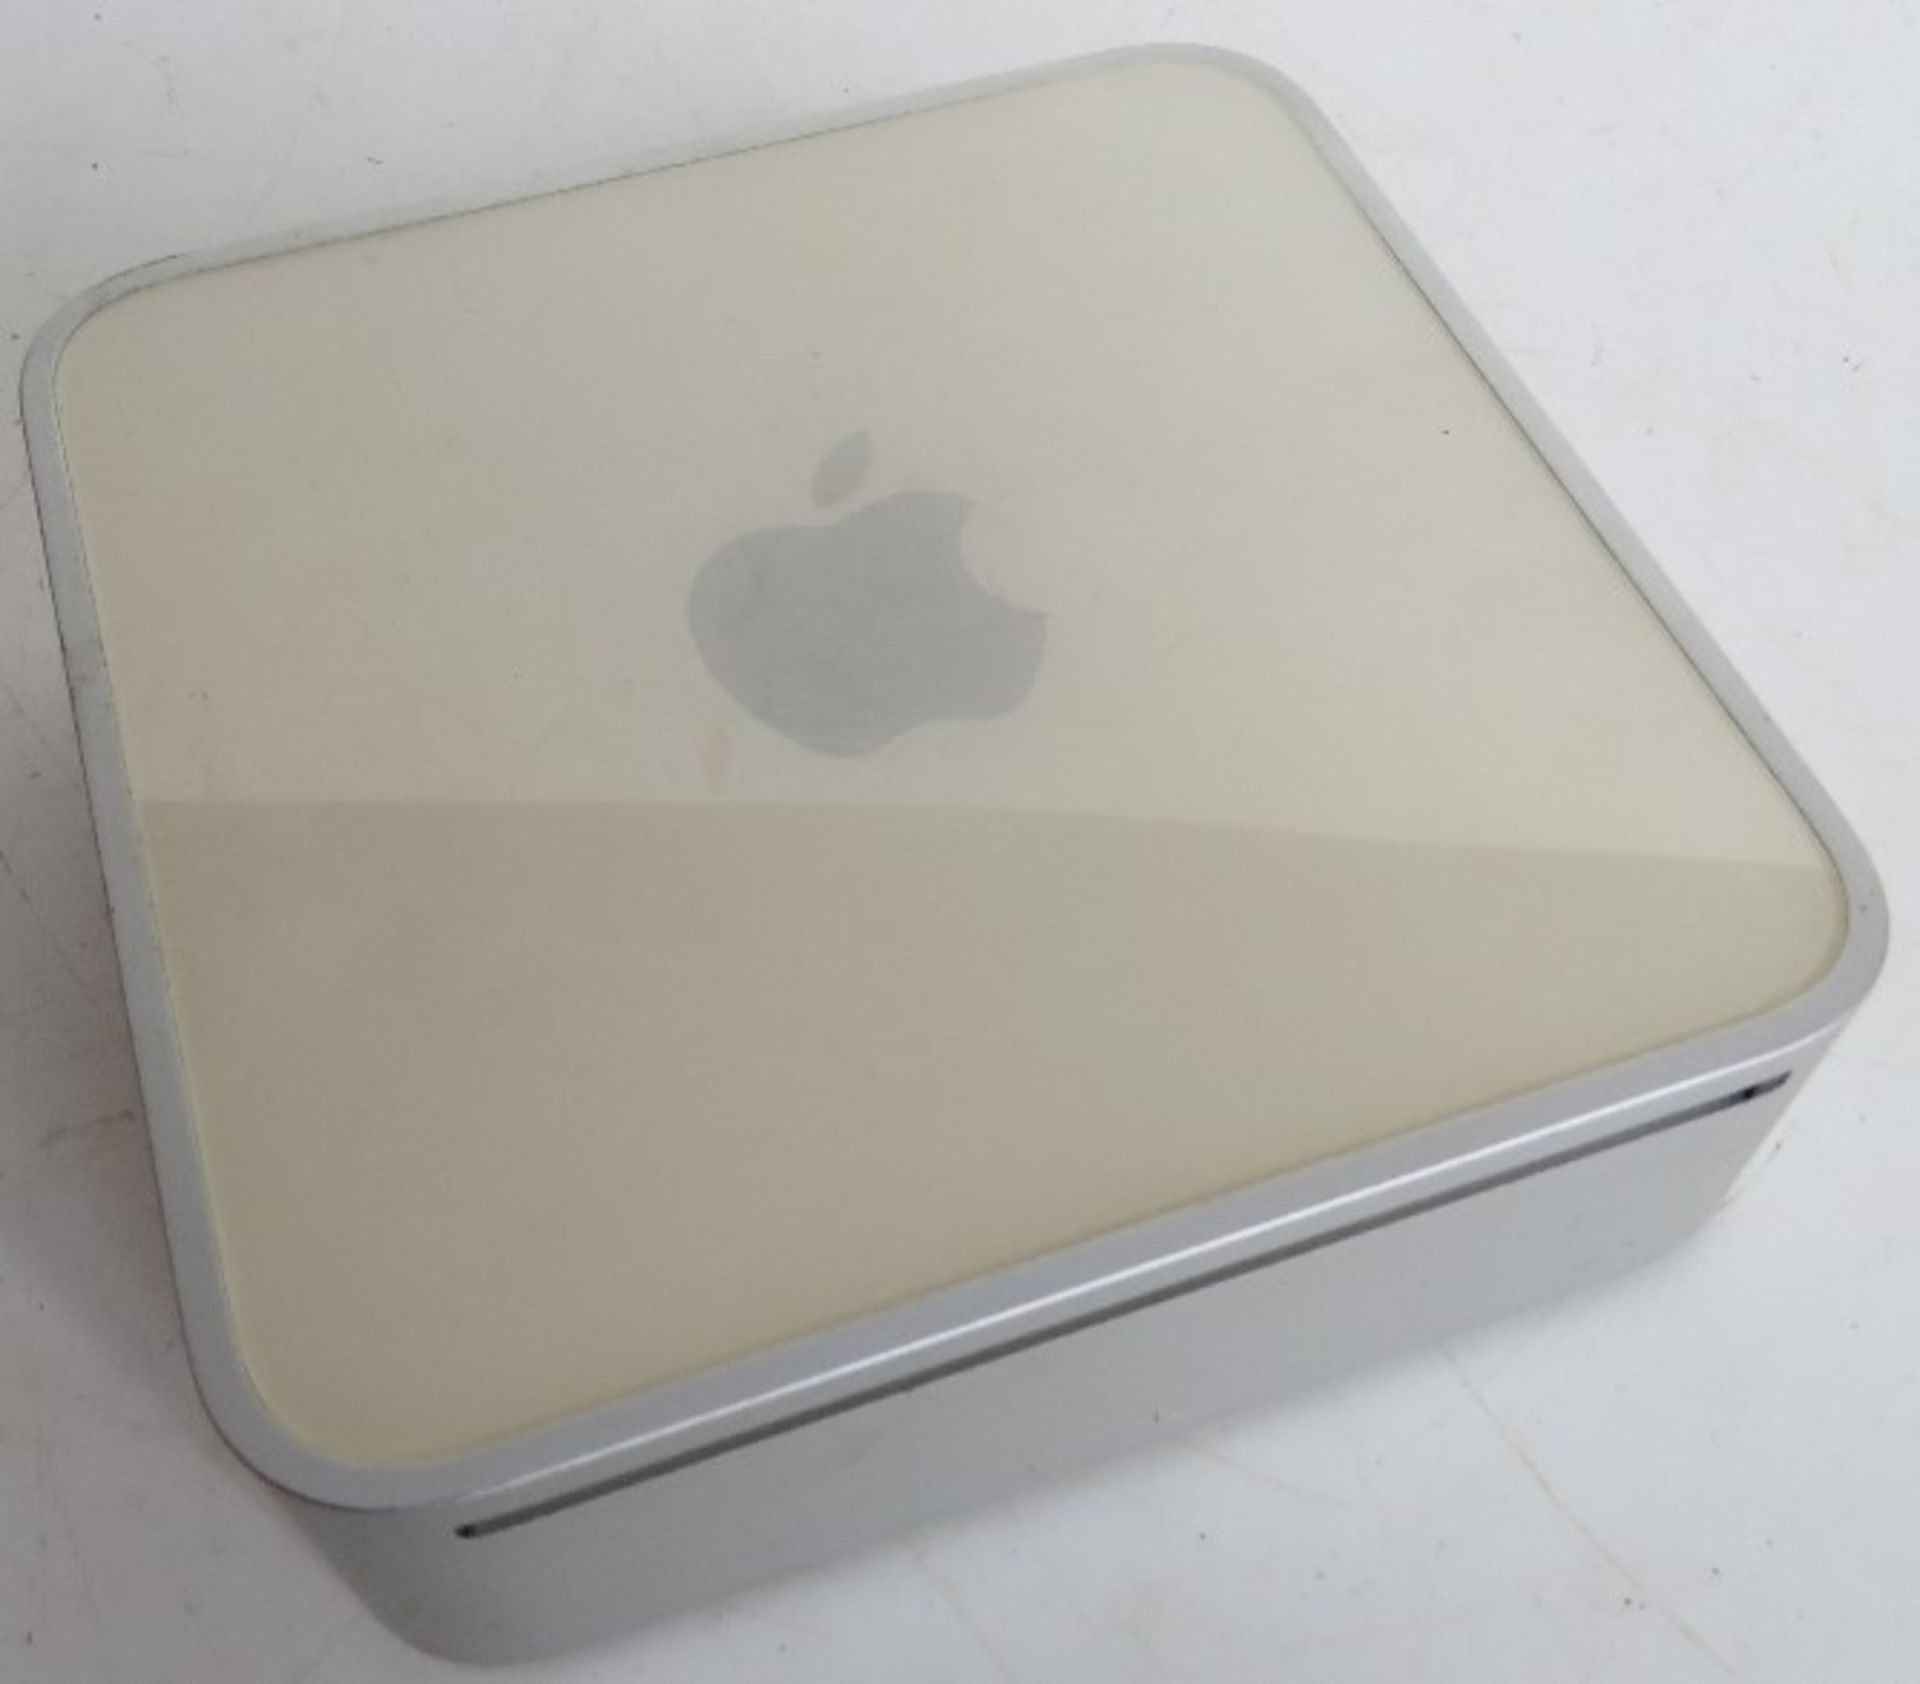 An Apple Mac mini. No cables.